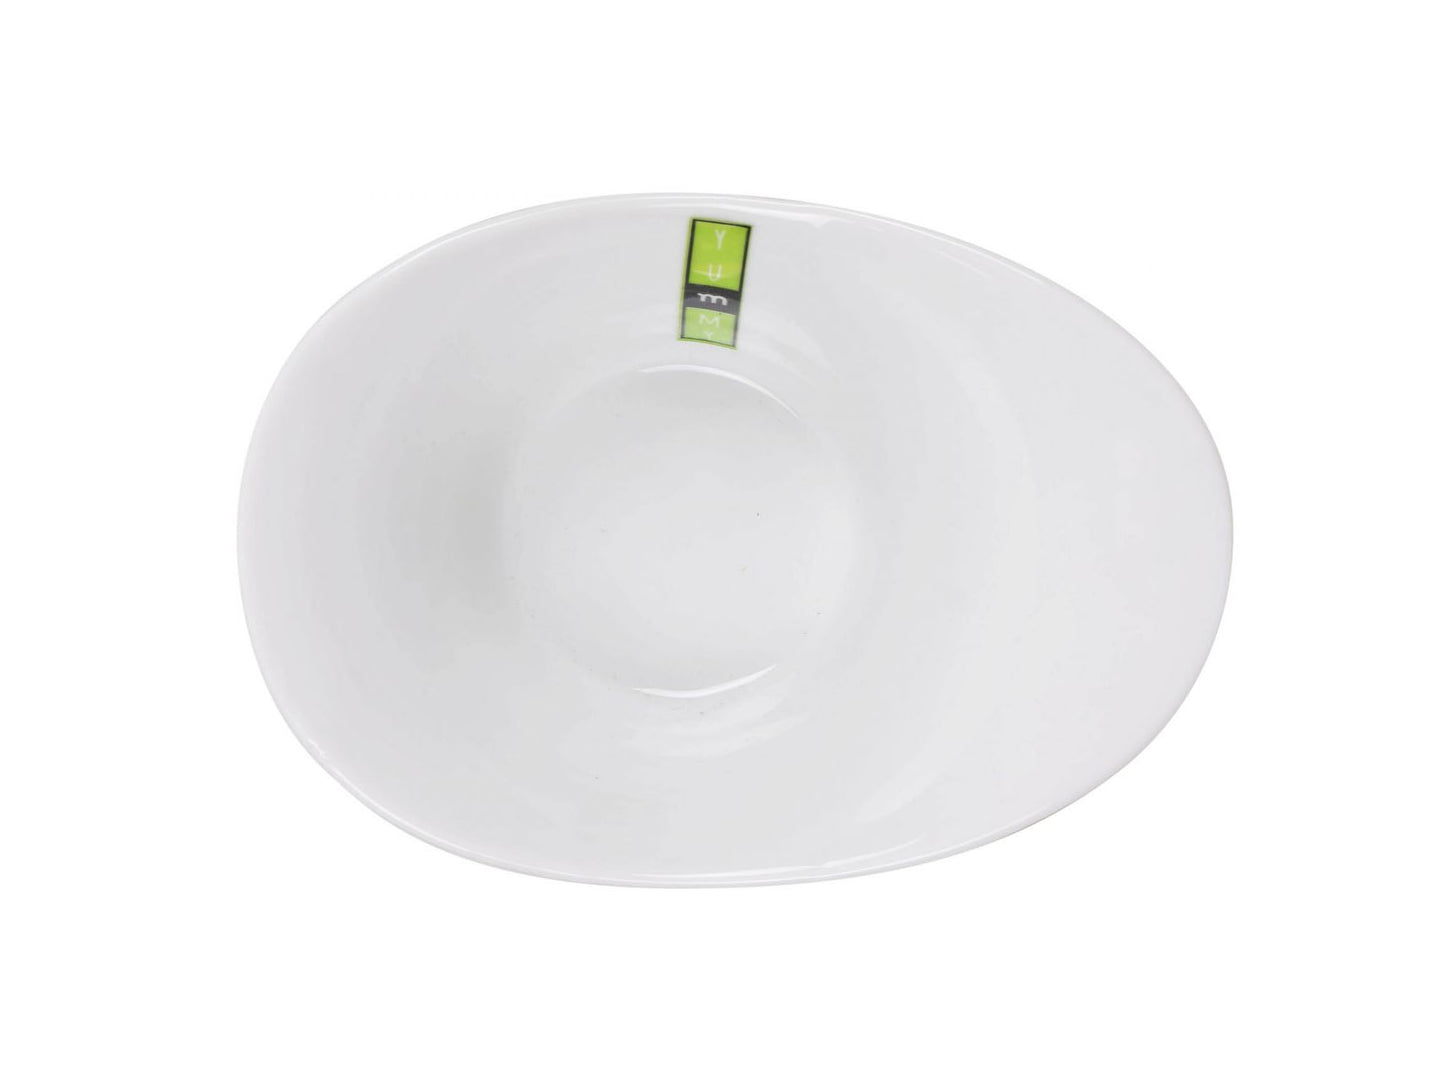 Yummy White porcelain bowl 18.4x13x7.3cm